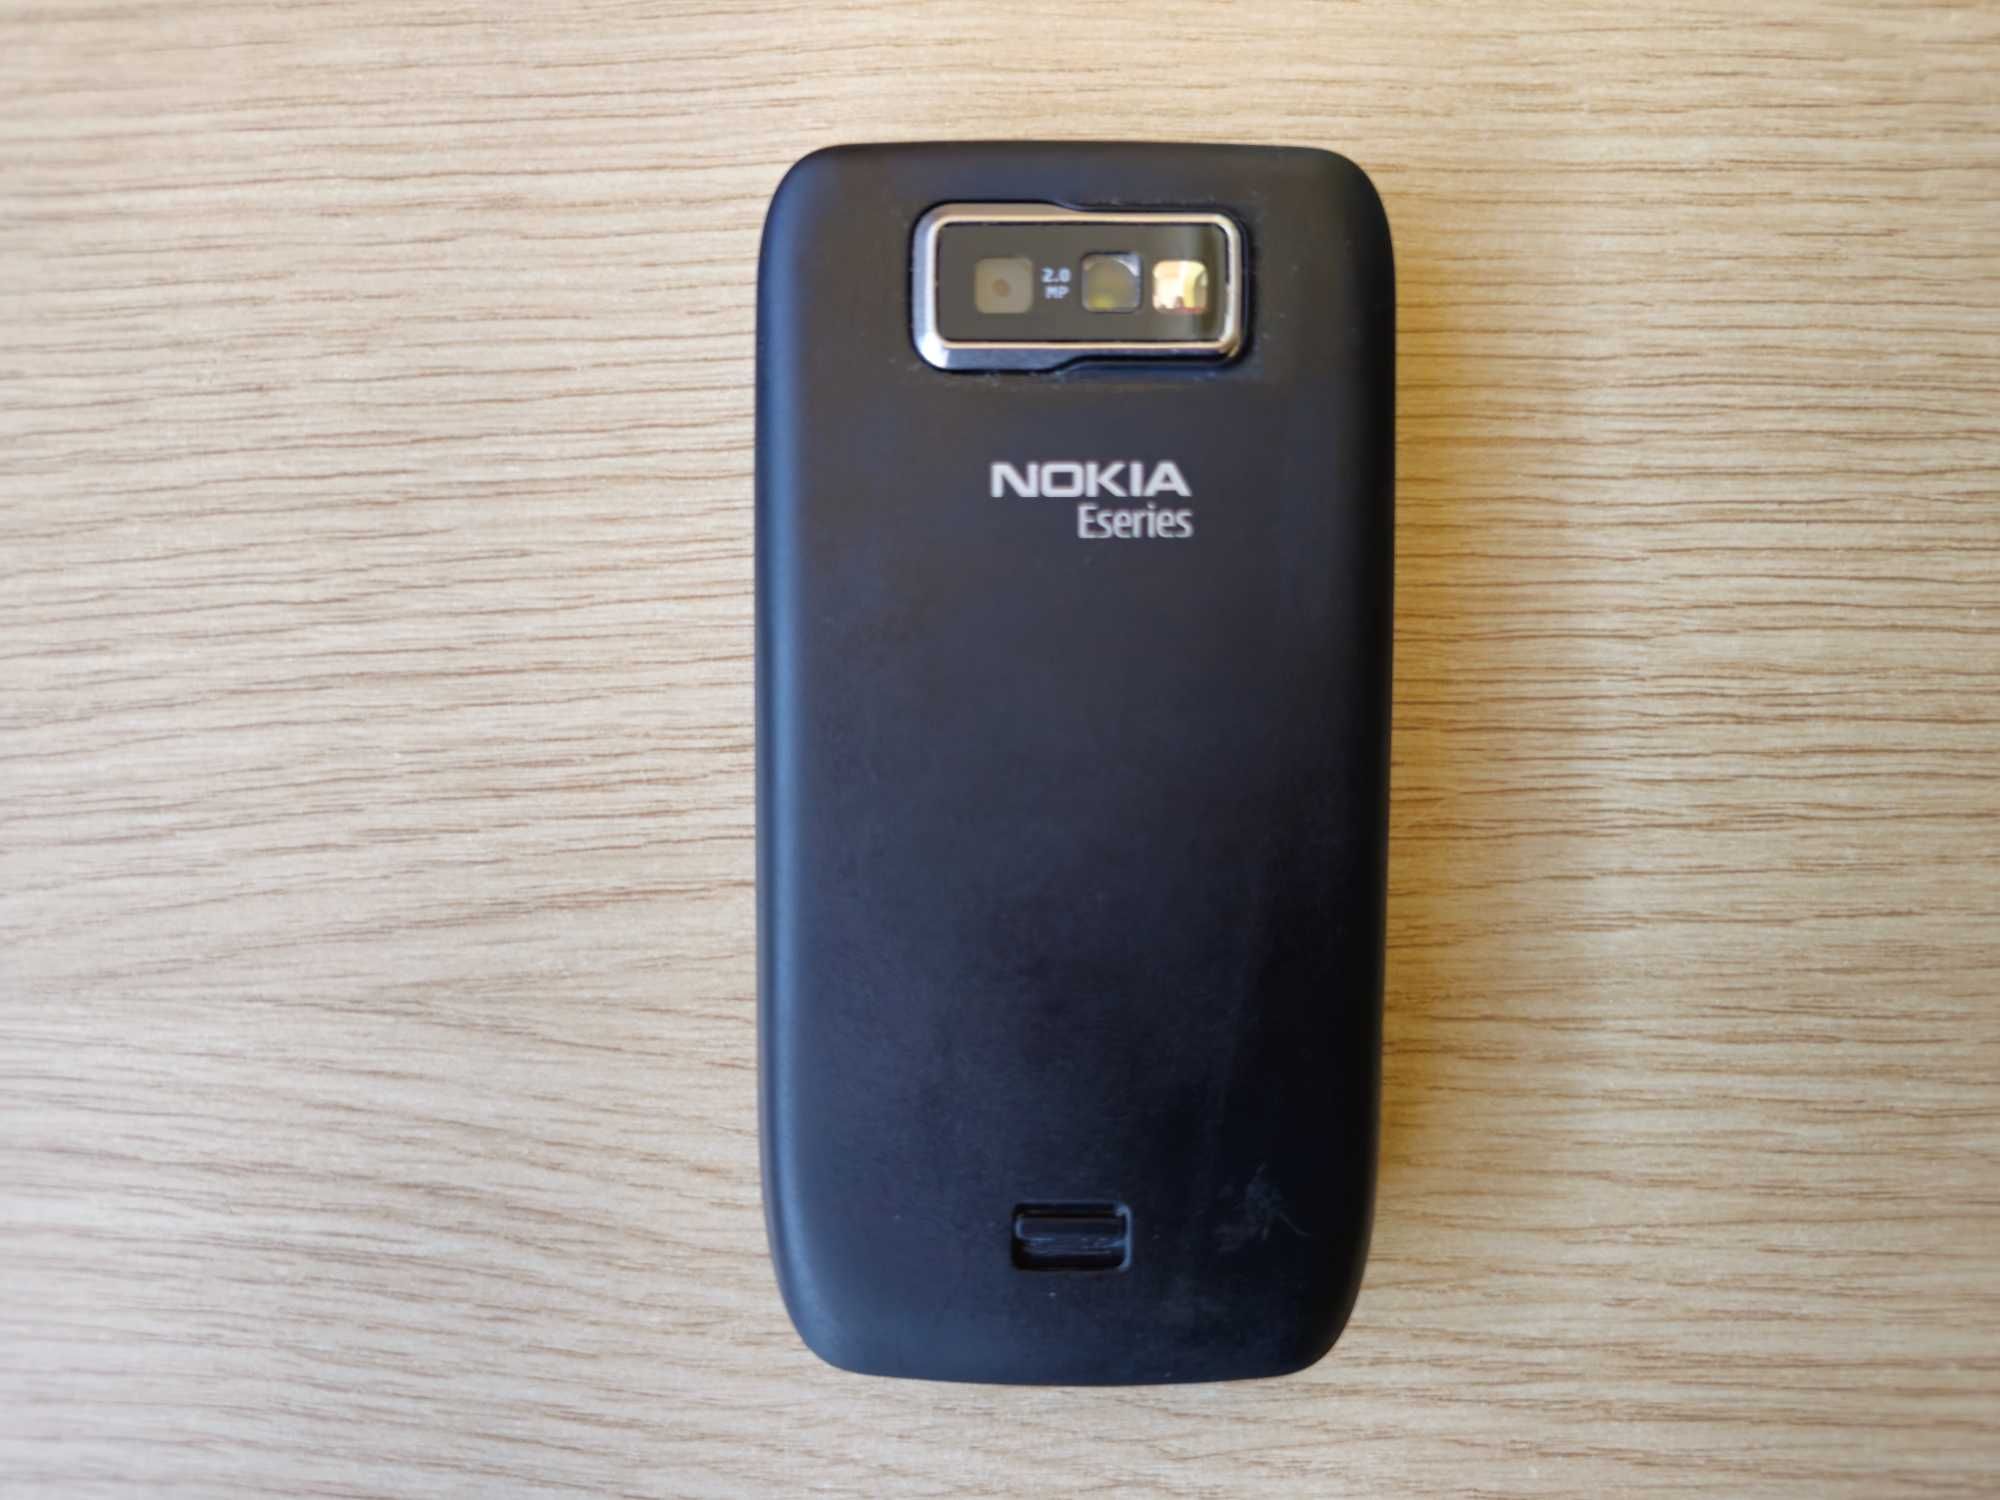 ТОП СЪСТОЯНИЕ: NOKIA E63 Symbian Нокиа Симбиан Нокия